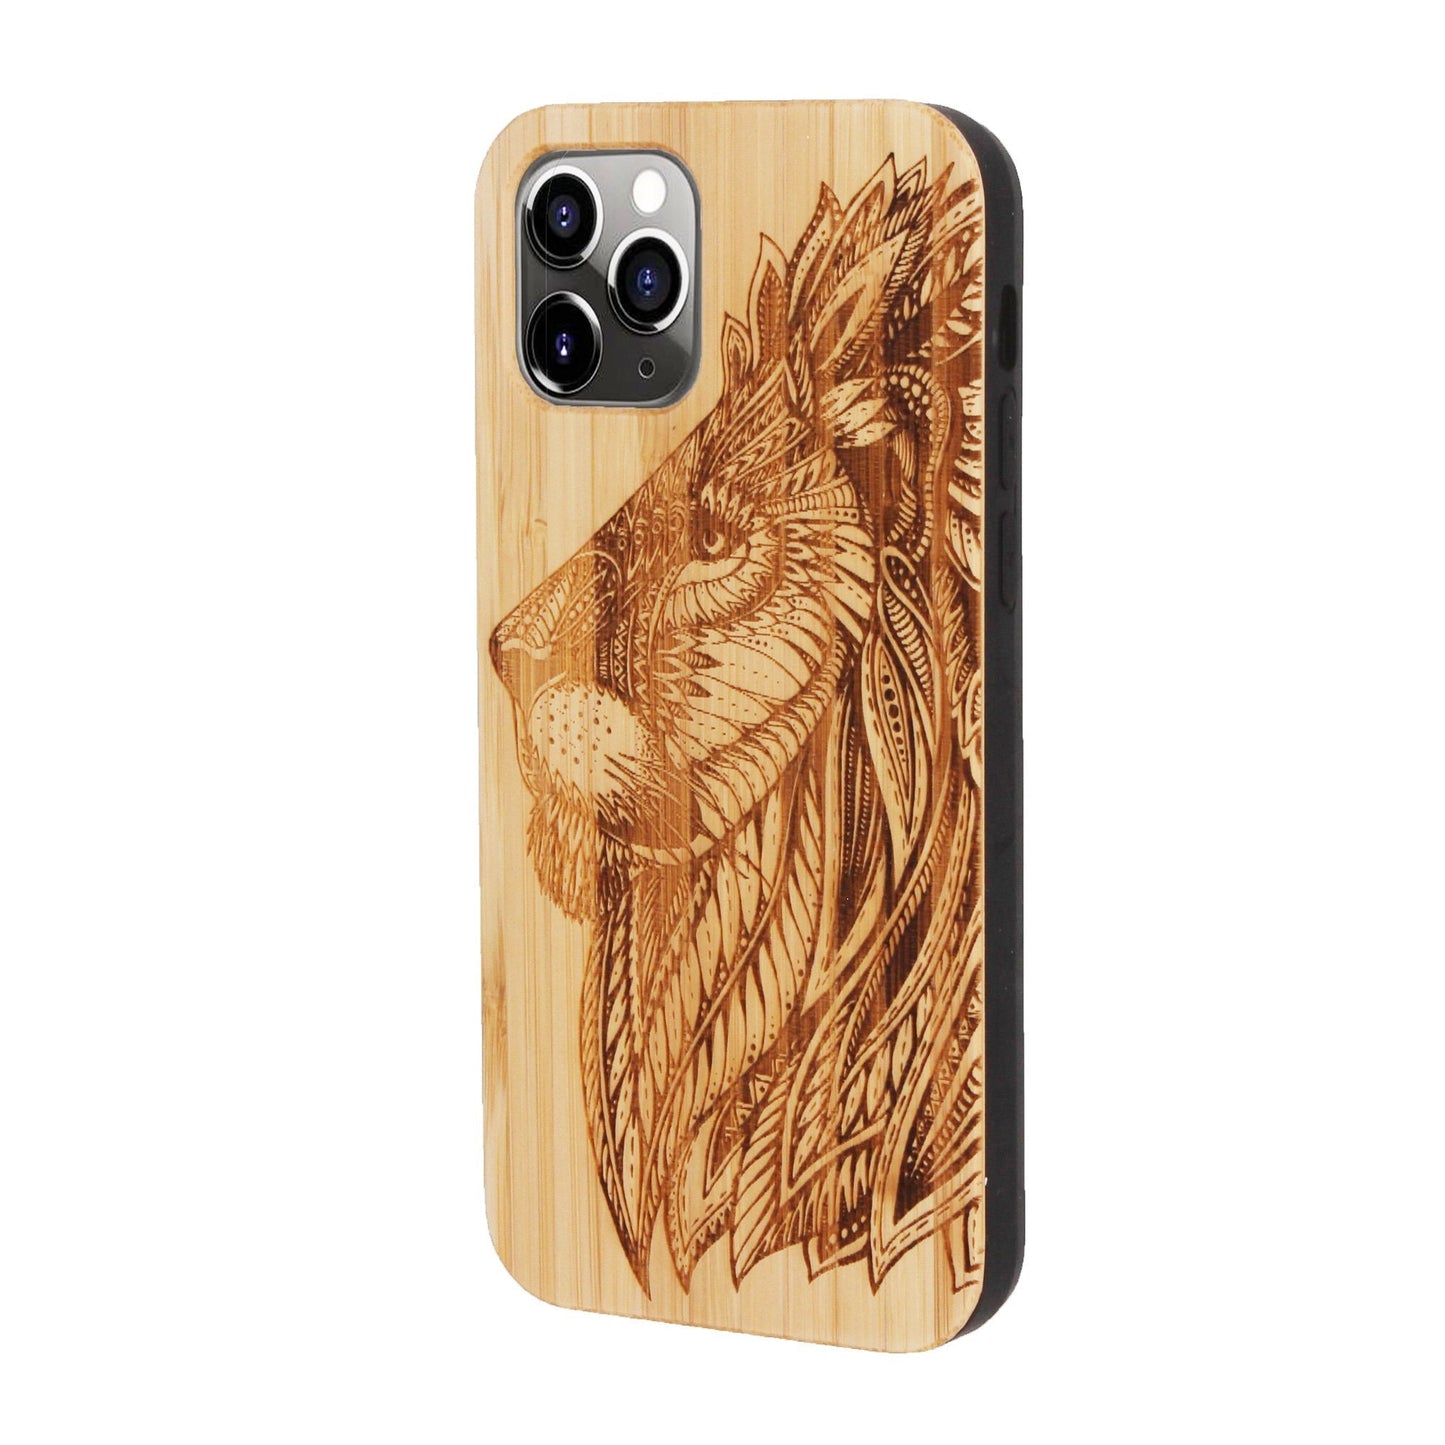 Coque en bambou Lion Eden pour iPhone 11 Pro 